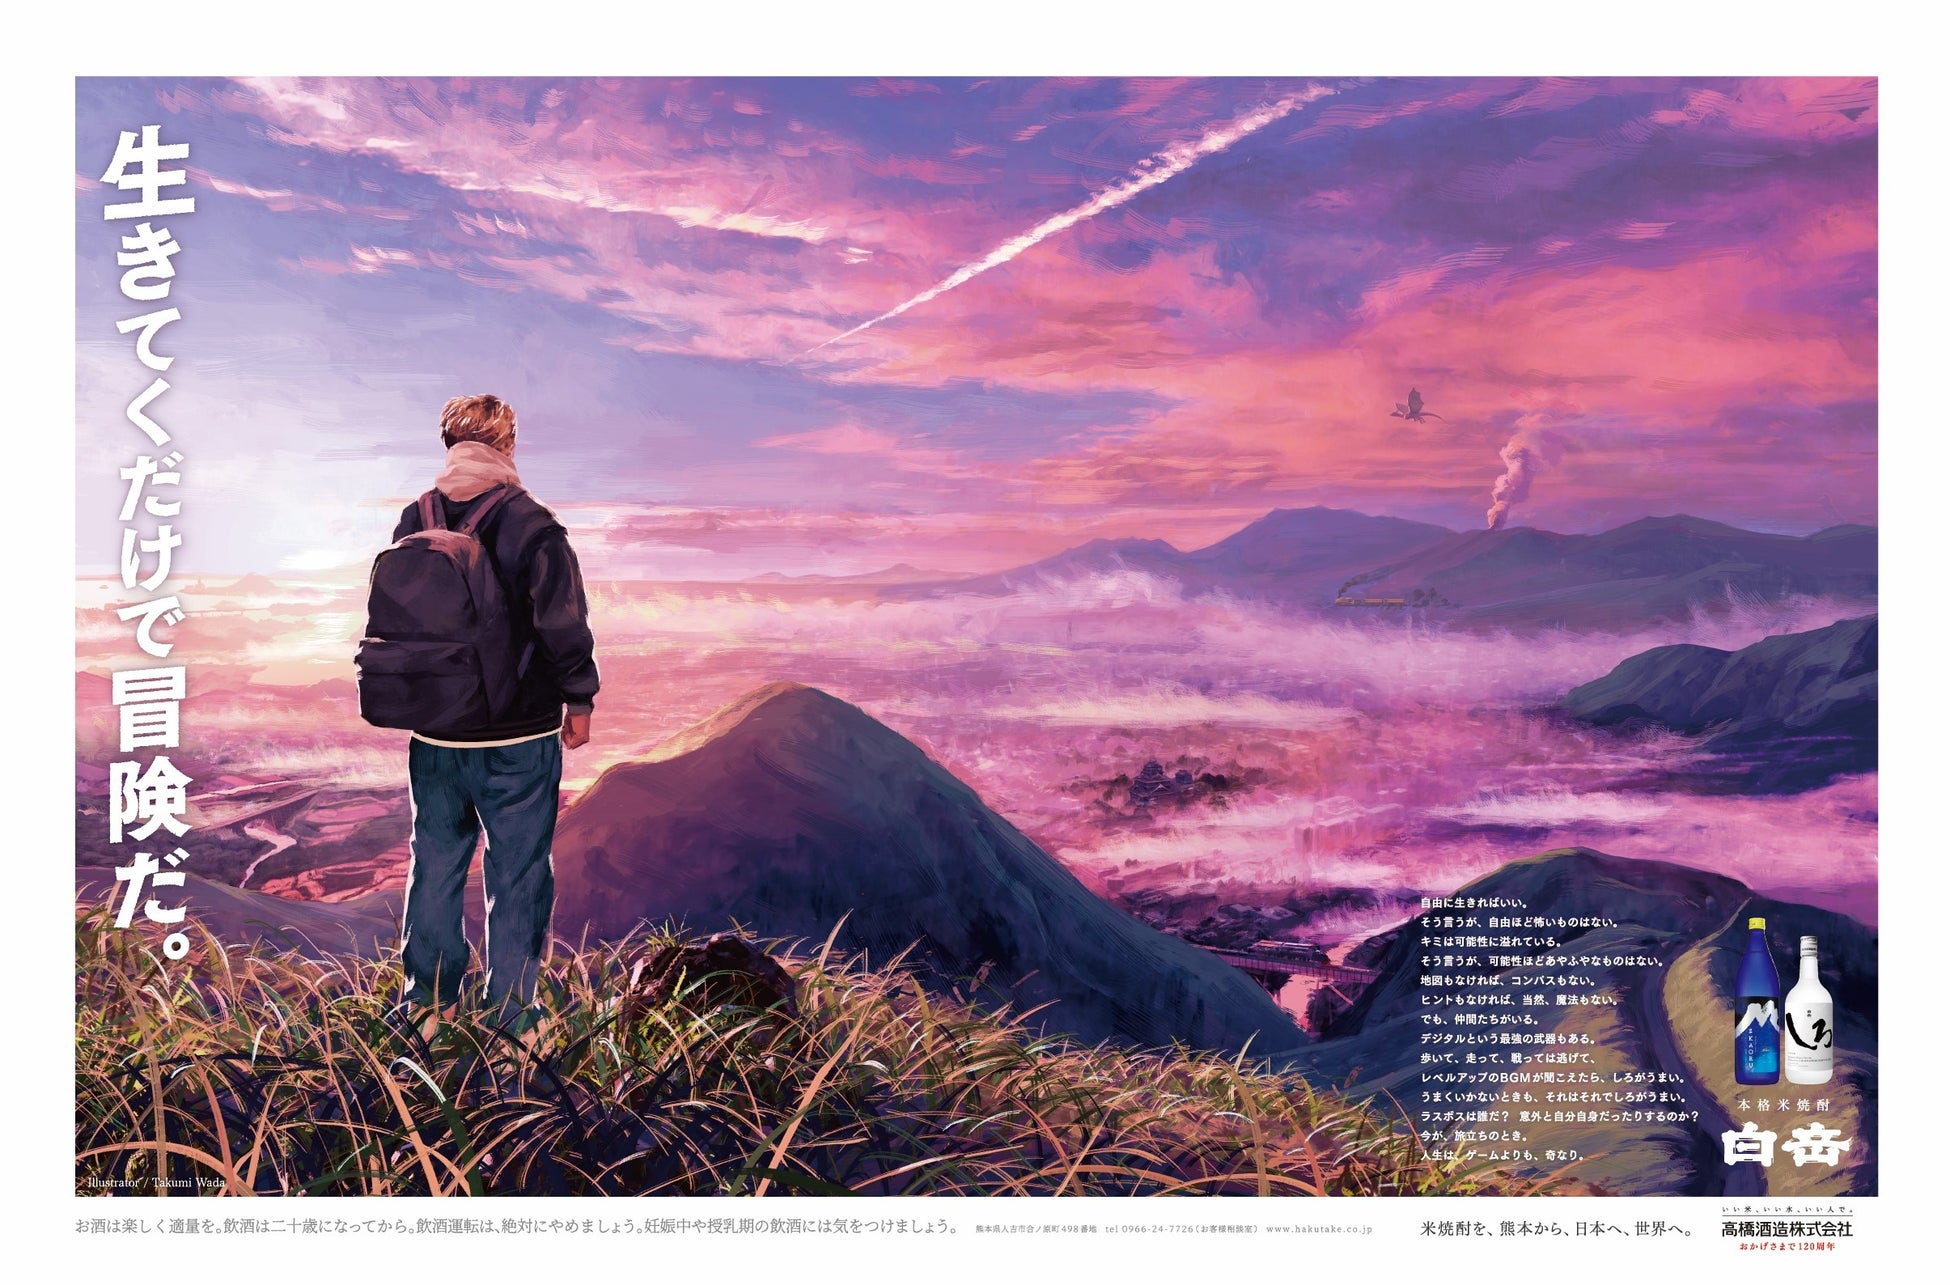 白岳しろでおなじみの高橋酒造、和田 拓氏がイラストを手掛けた年始広告「生きてくだけで冒険だ。」の特設サイトをリリース